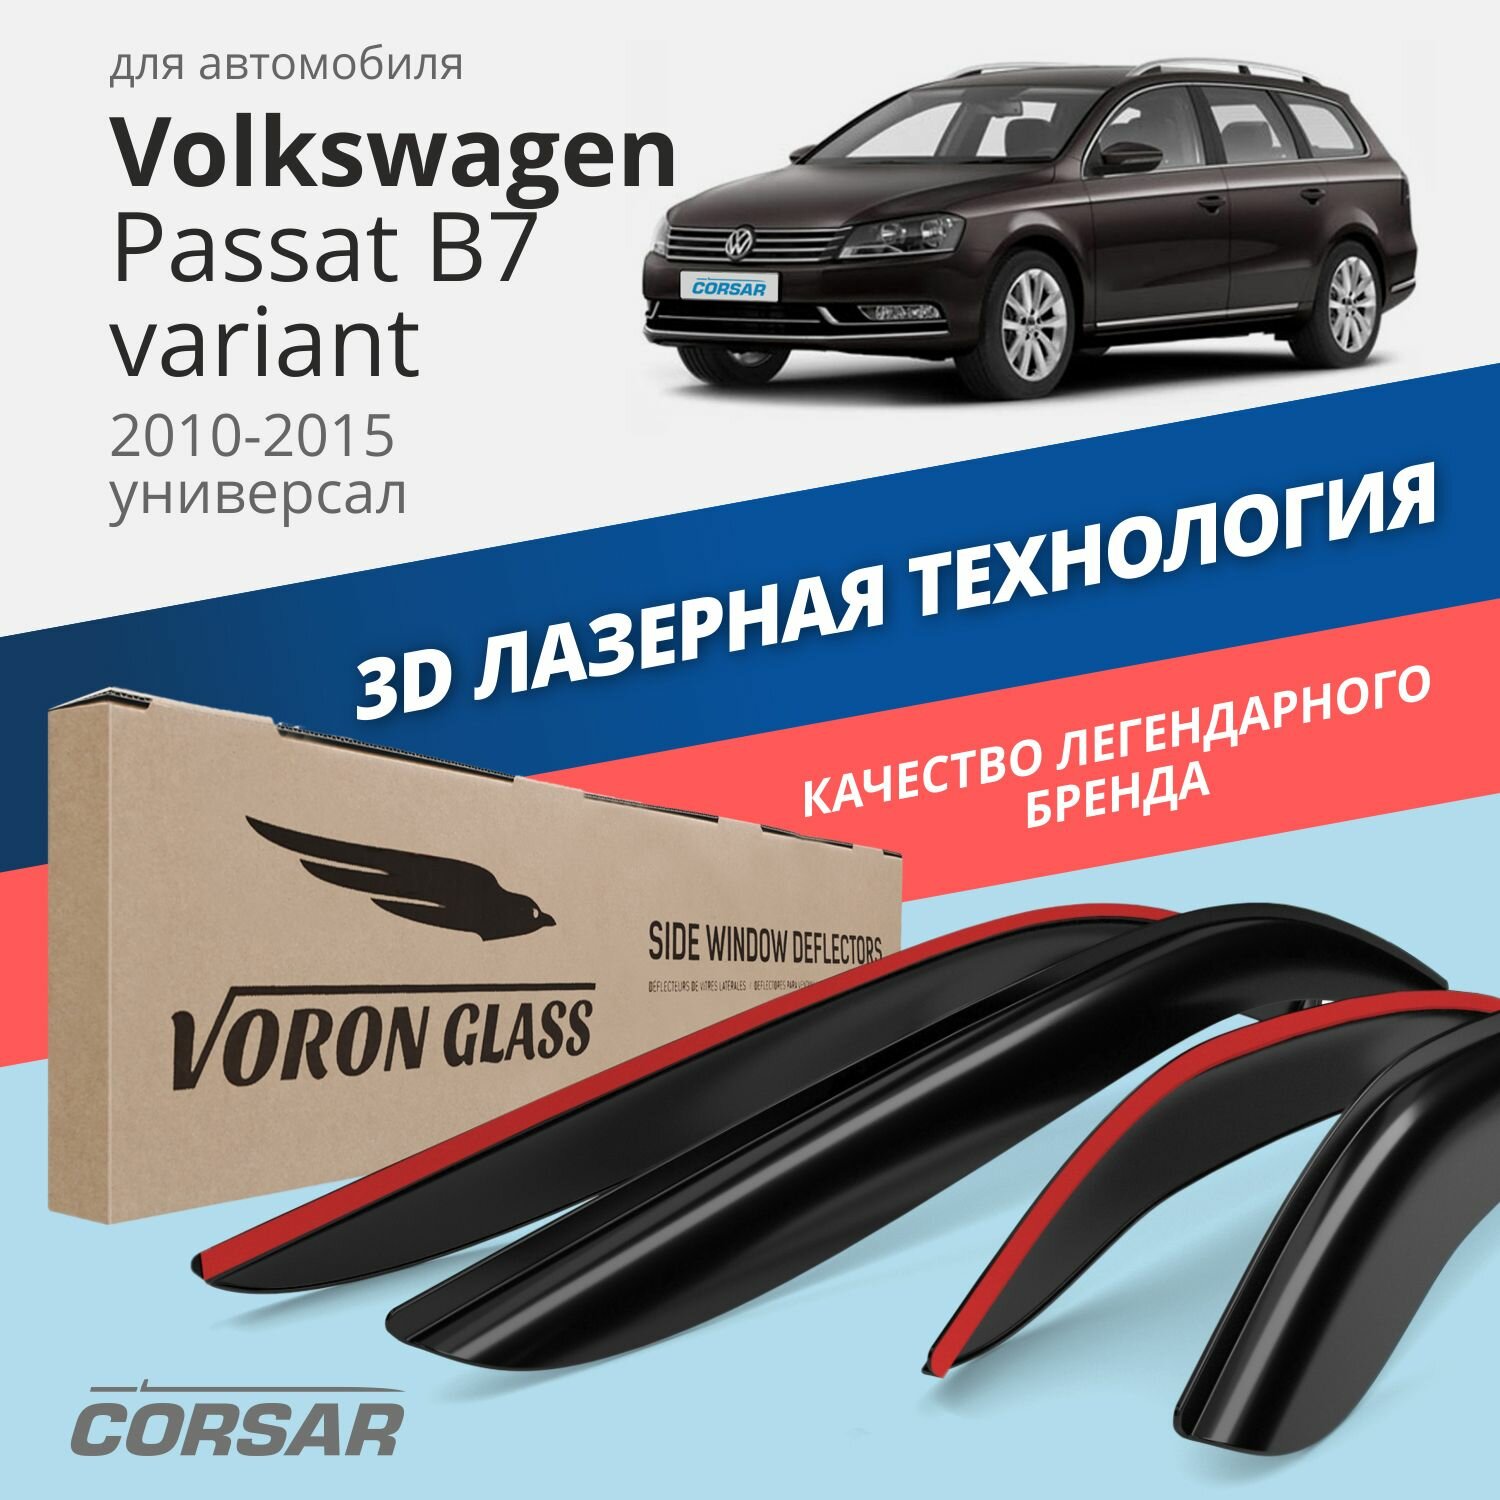 Дефлекторы окон Voron Glass серия Corsar для Volkswagen Passat B7 variant 2010-2015 универсал накладные 4 шт.